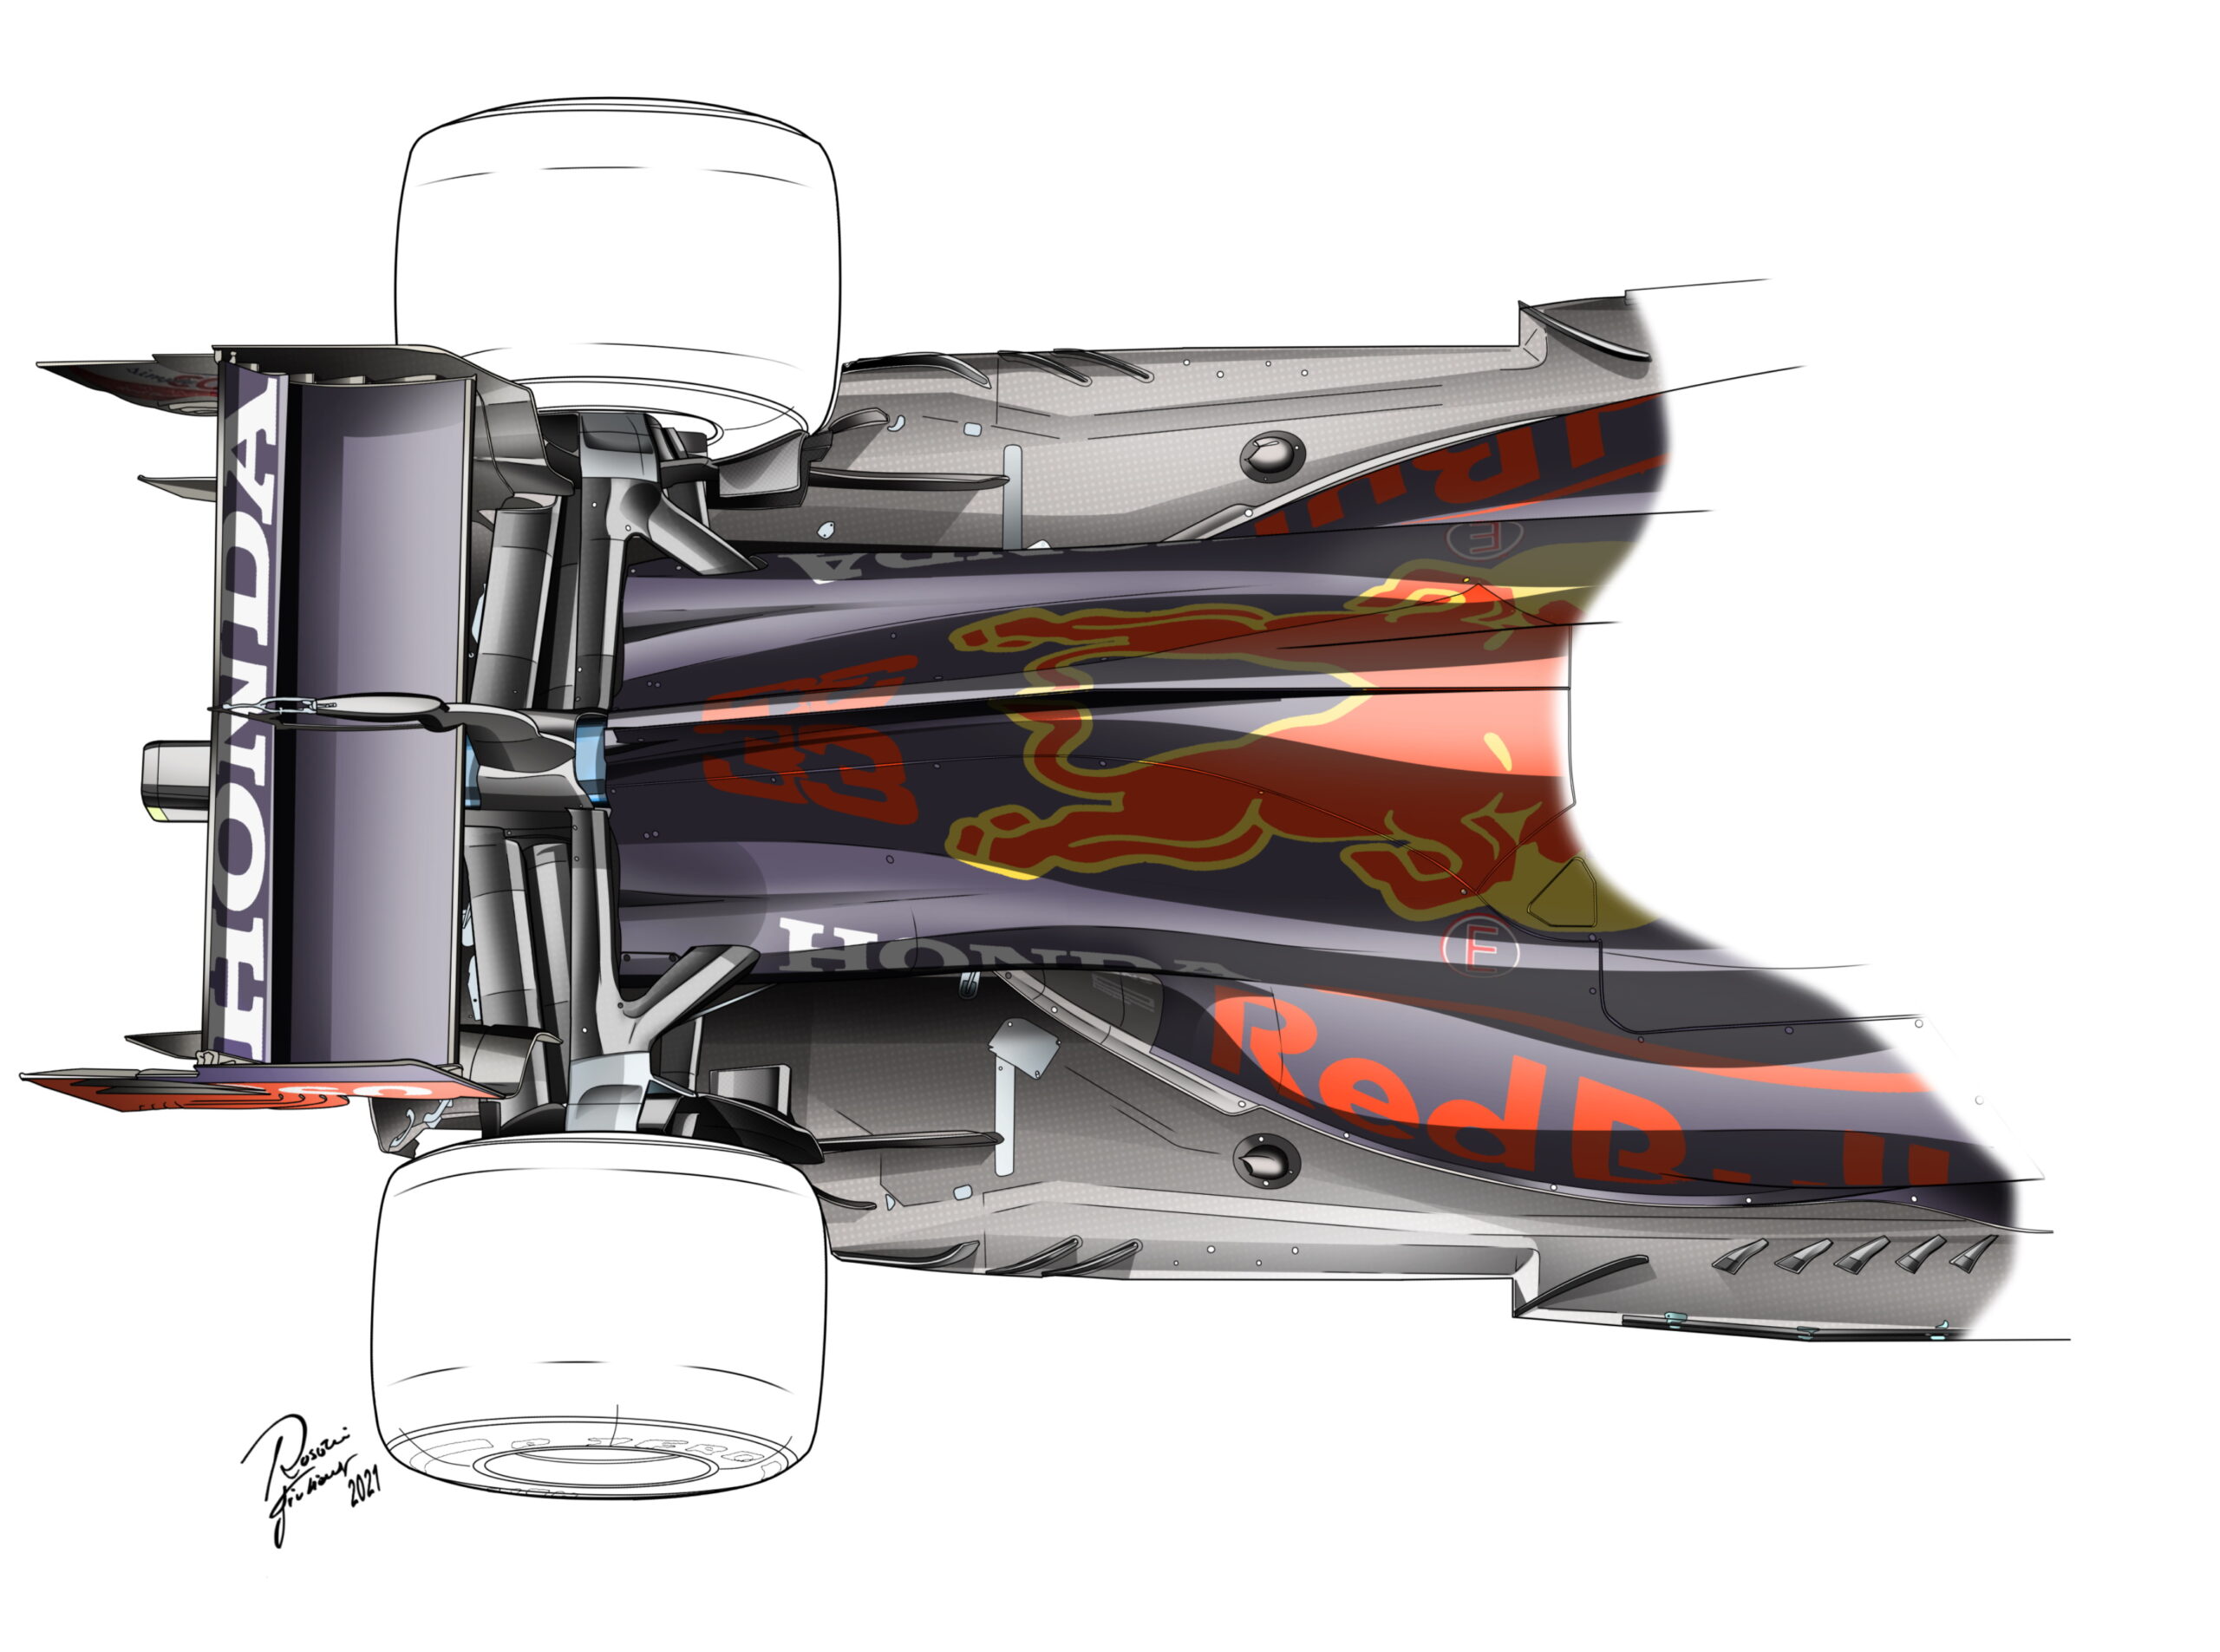 F1 - Tech F1 : les évolutions techniques aperçues sur la Red Bull au Portugal